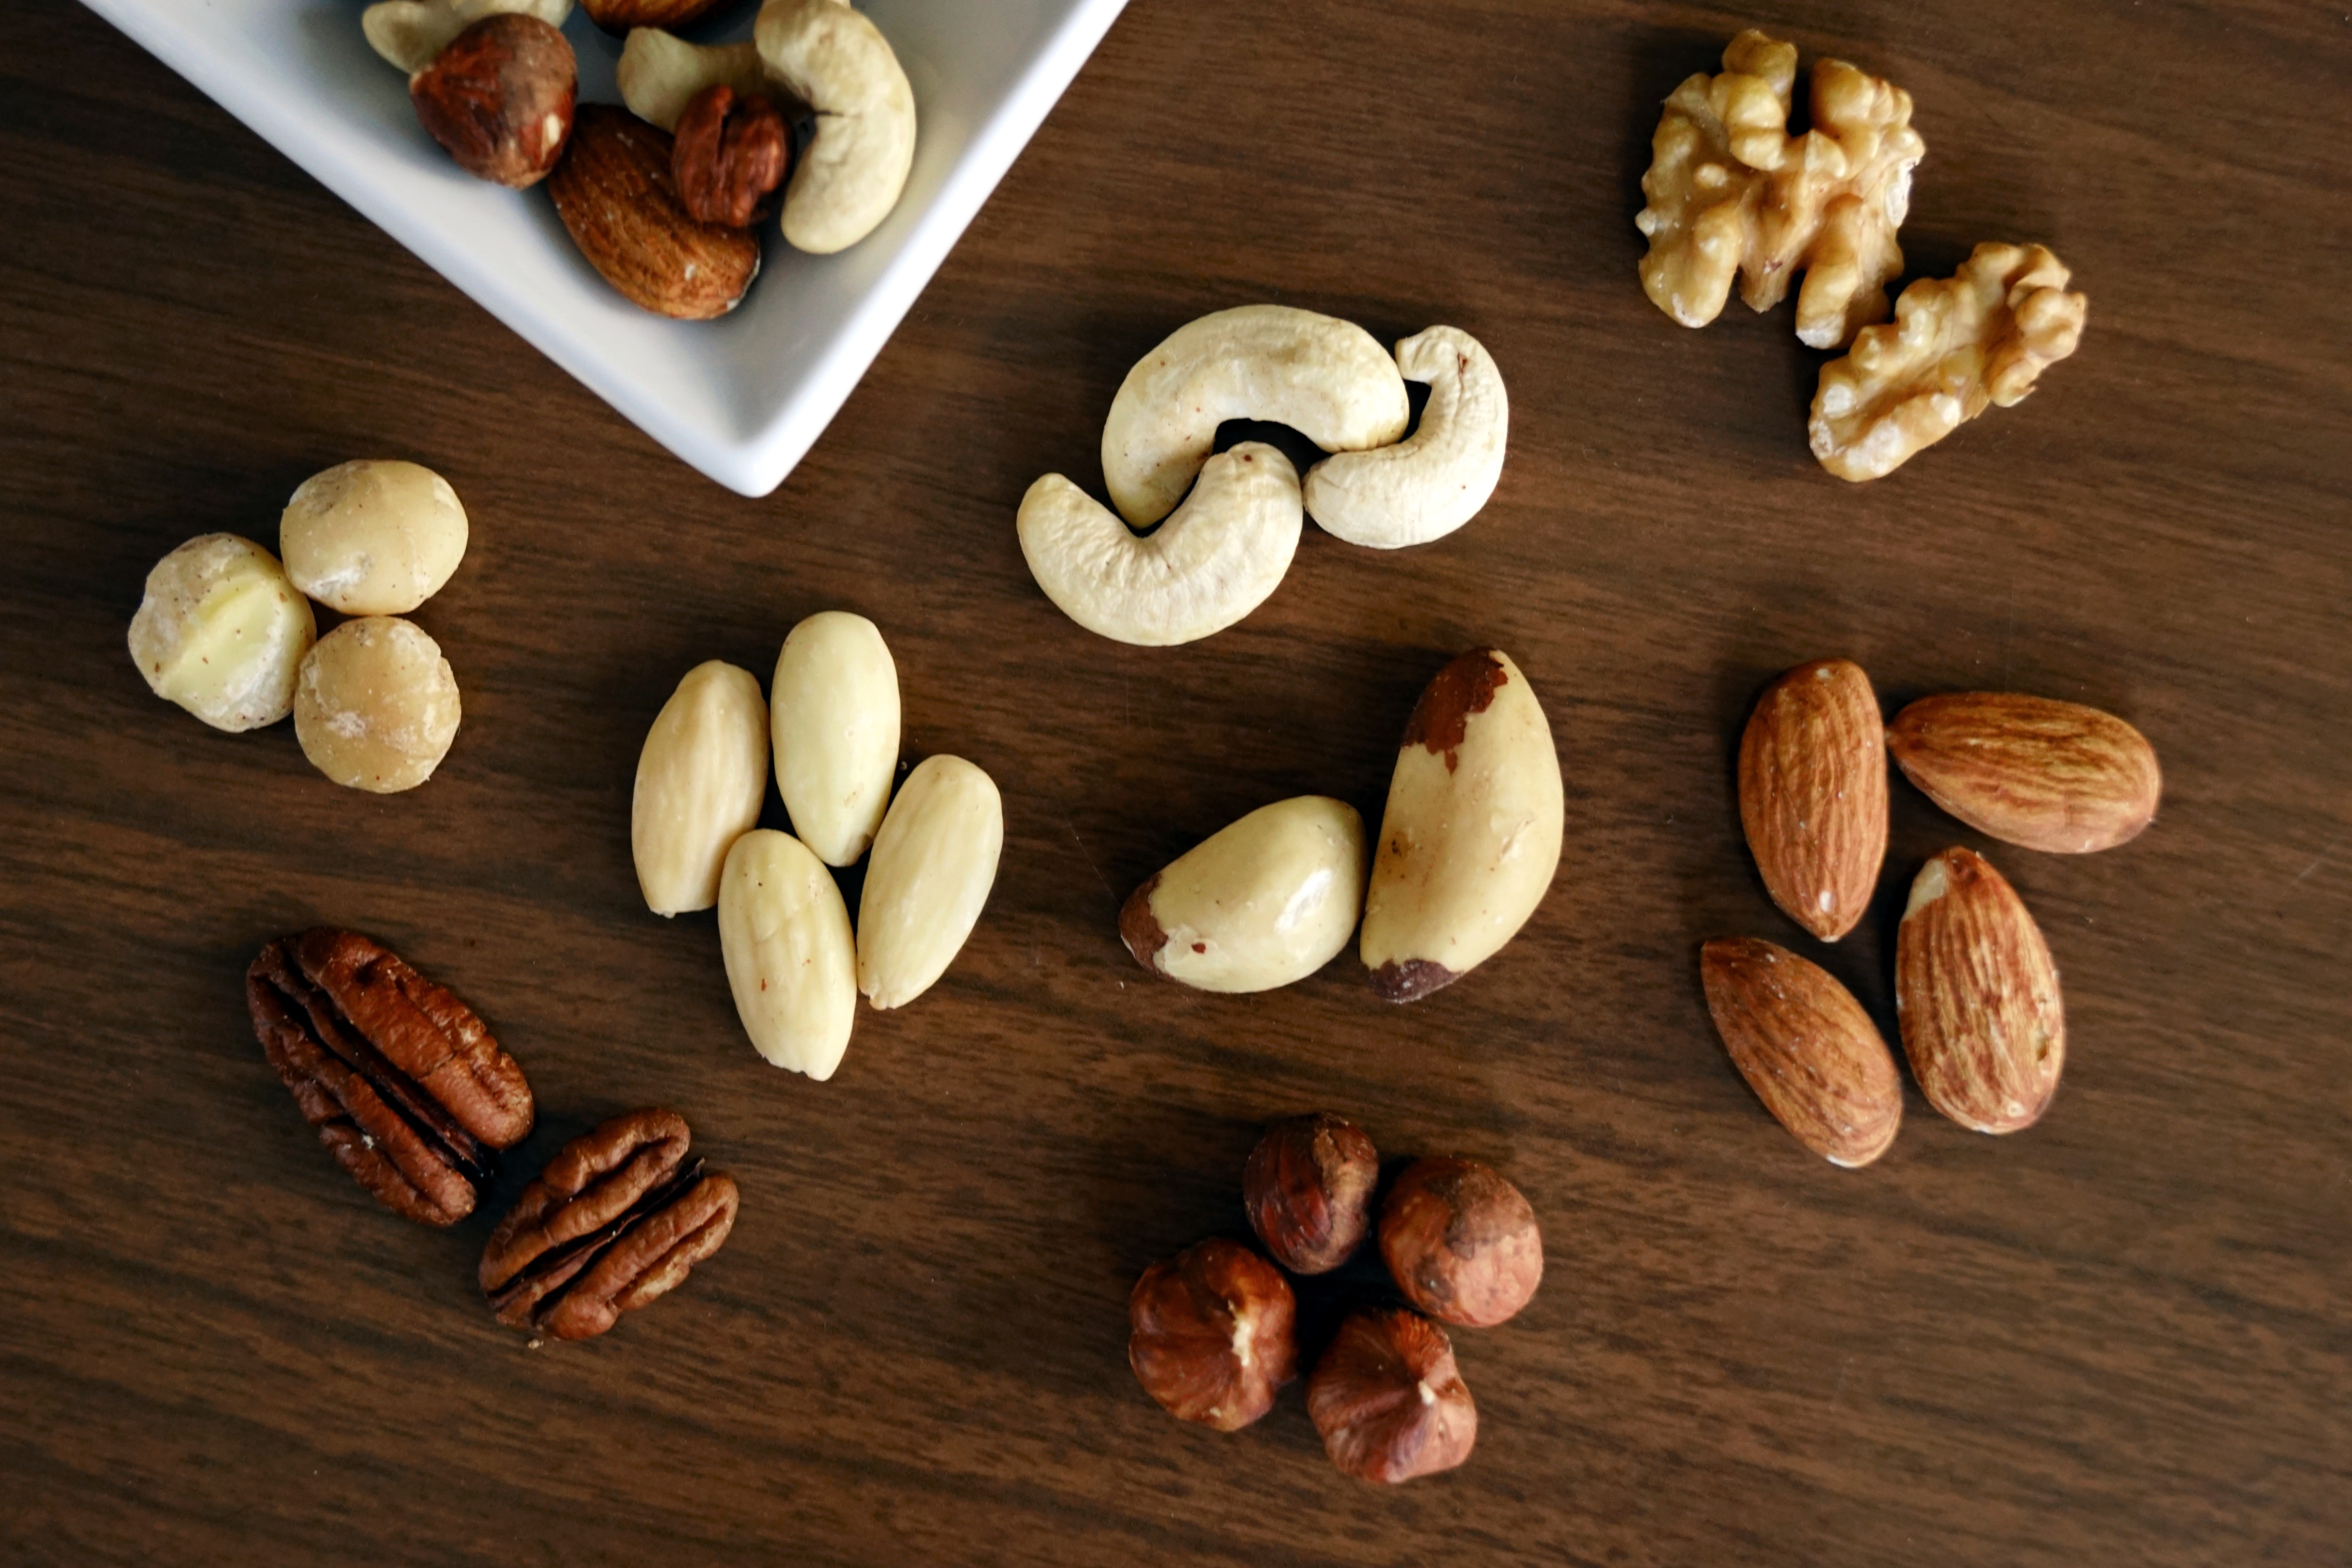 almond-almonds-brazil-nut-1295572